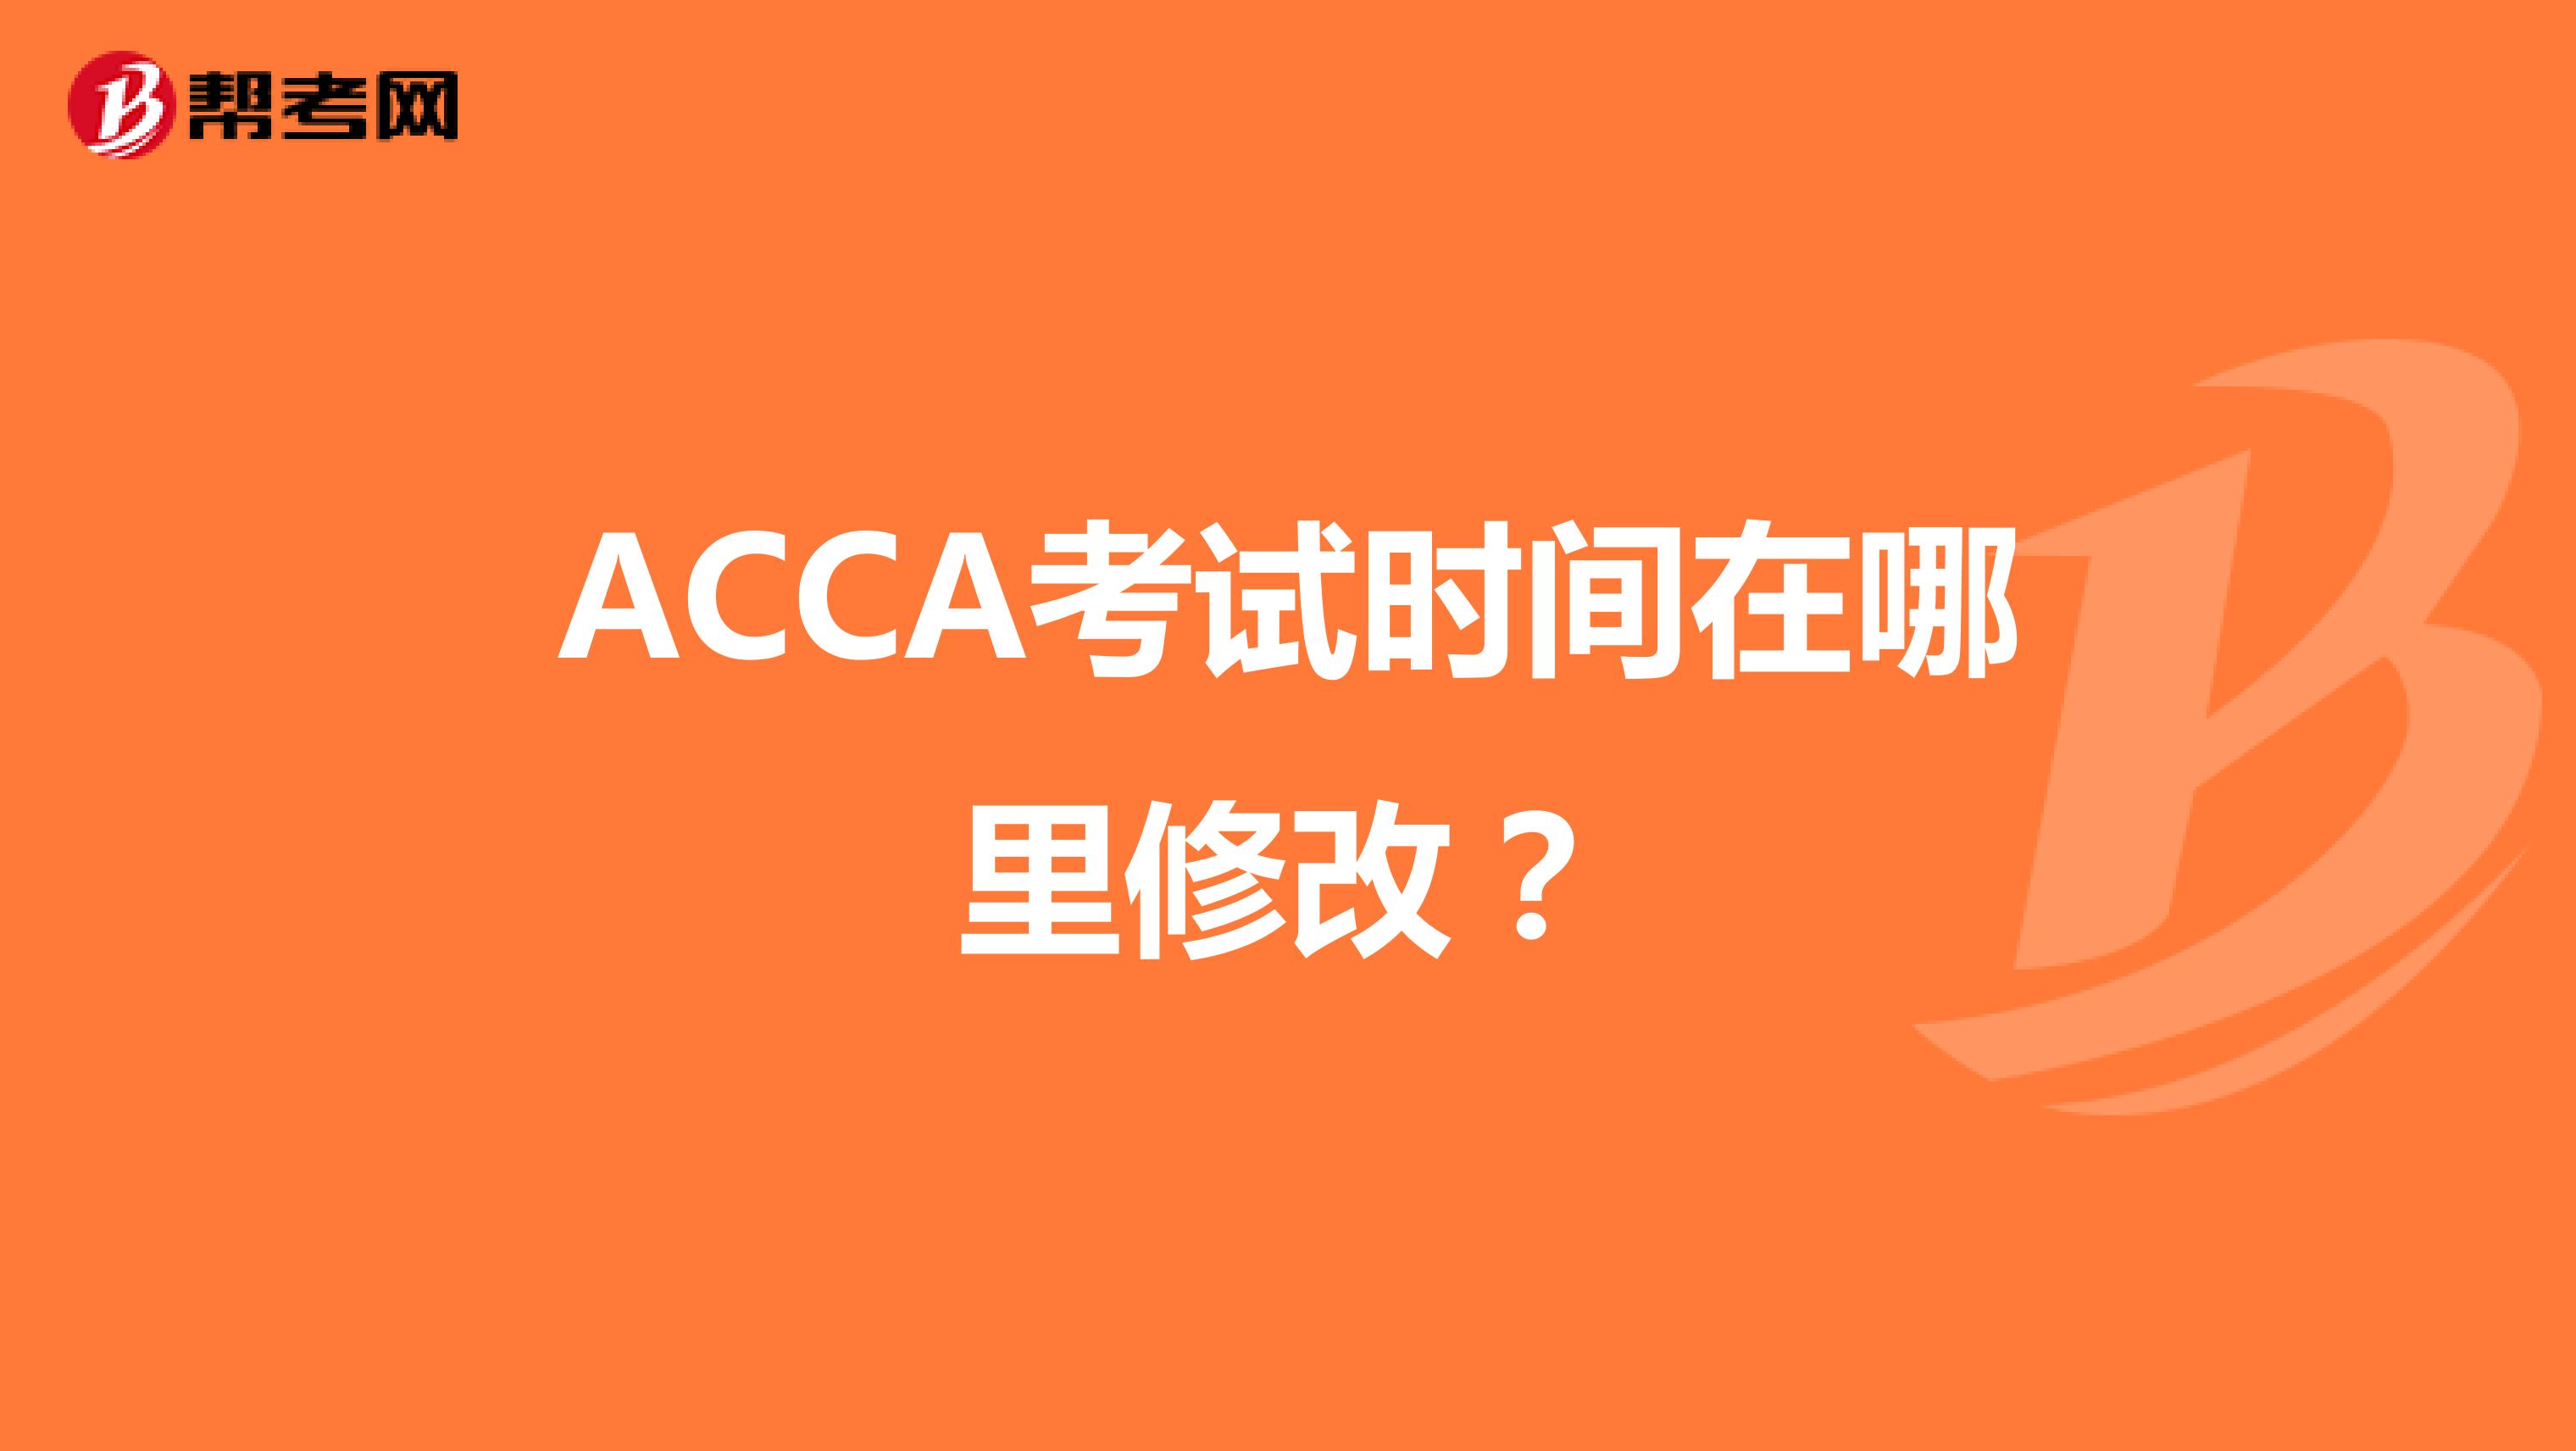 ACCA考试时间在哪里修改？